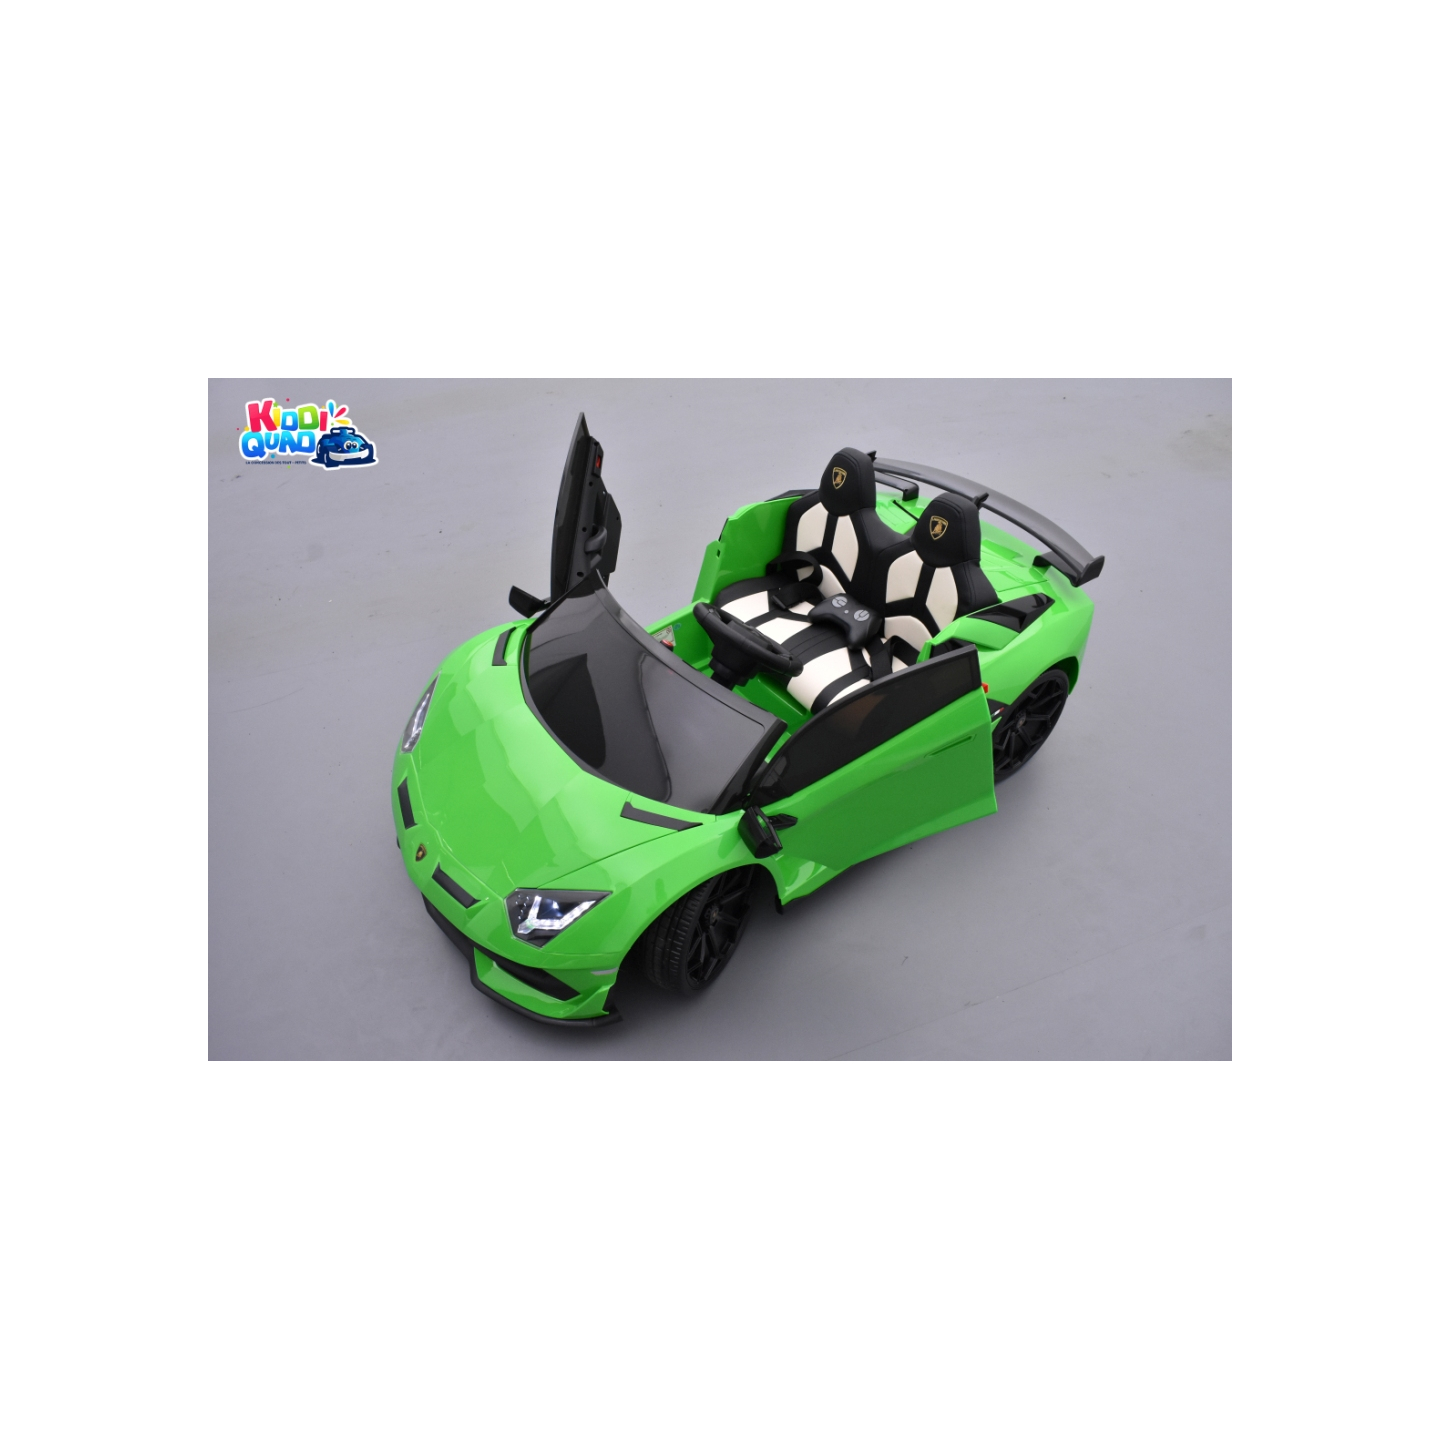 Lamborghini SVJ 2 places Vert, voiture électrique pour enfant, 24 volts - 4 moteurs